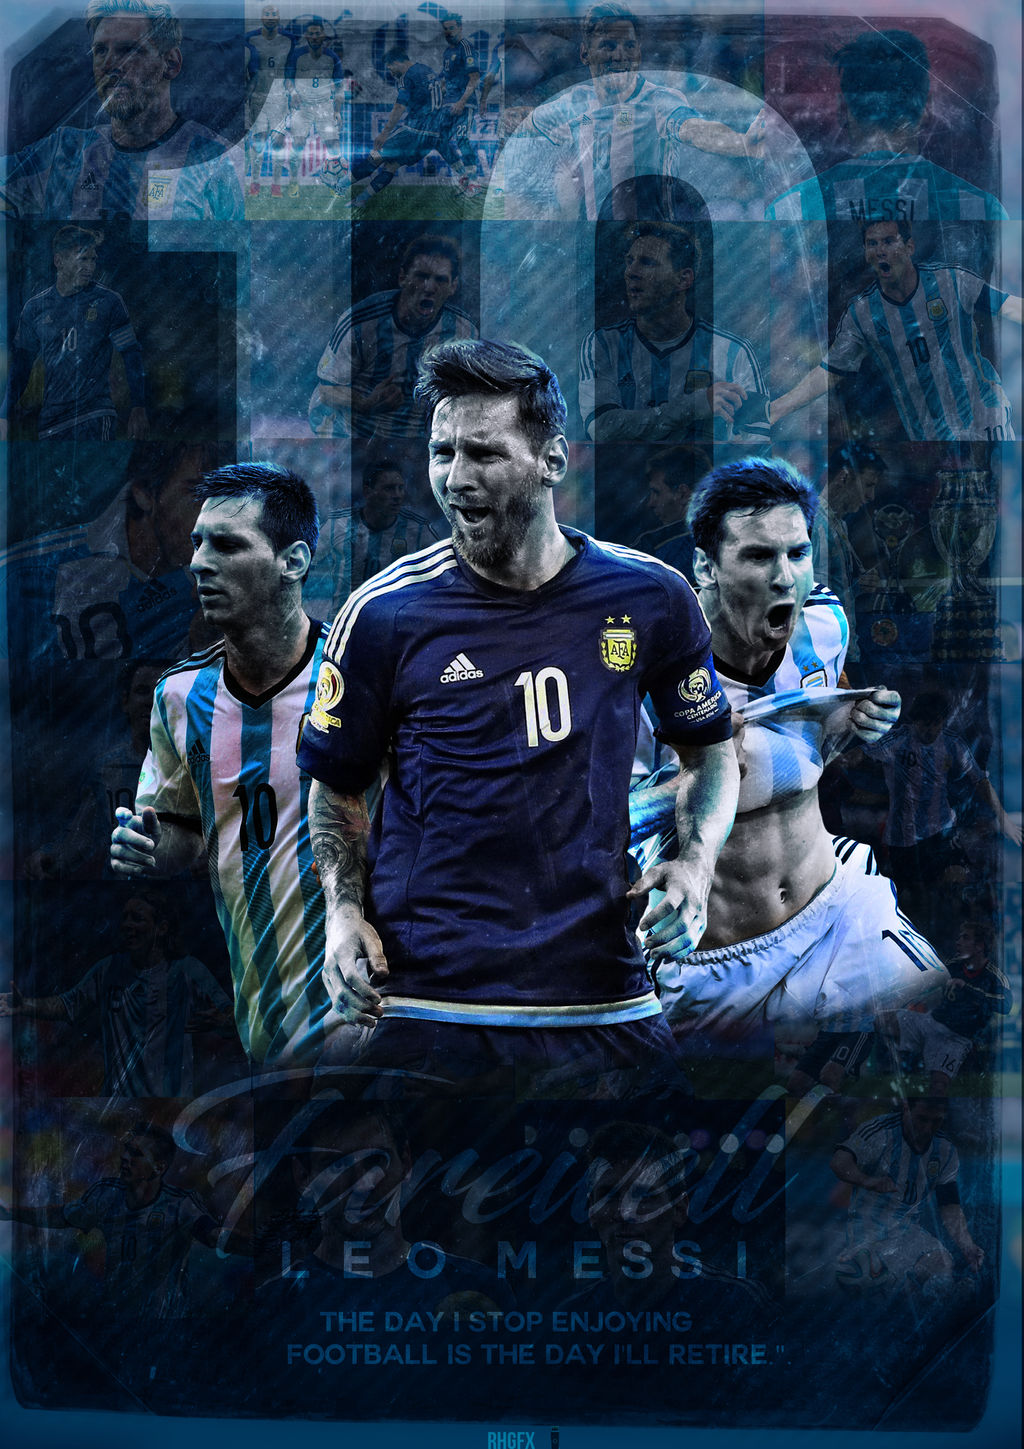 Đam mê bóng đá, đam mê Messi và đội tuyển Argentina? Hãy truy cập và tải hình nền mới nhất của siêu sao và đội bóng tài năng này để trang trí thêm cho vàiệc làm việc và giải trí của bạn.